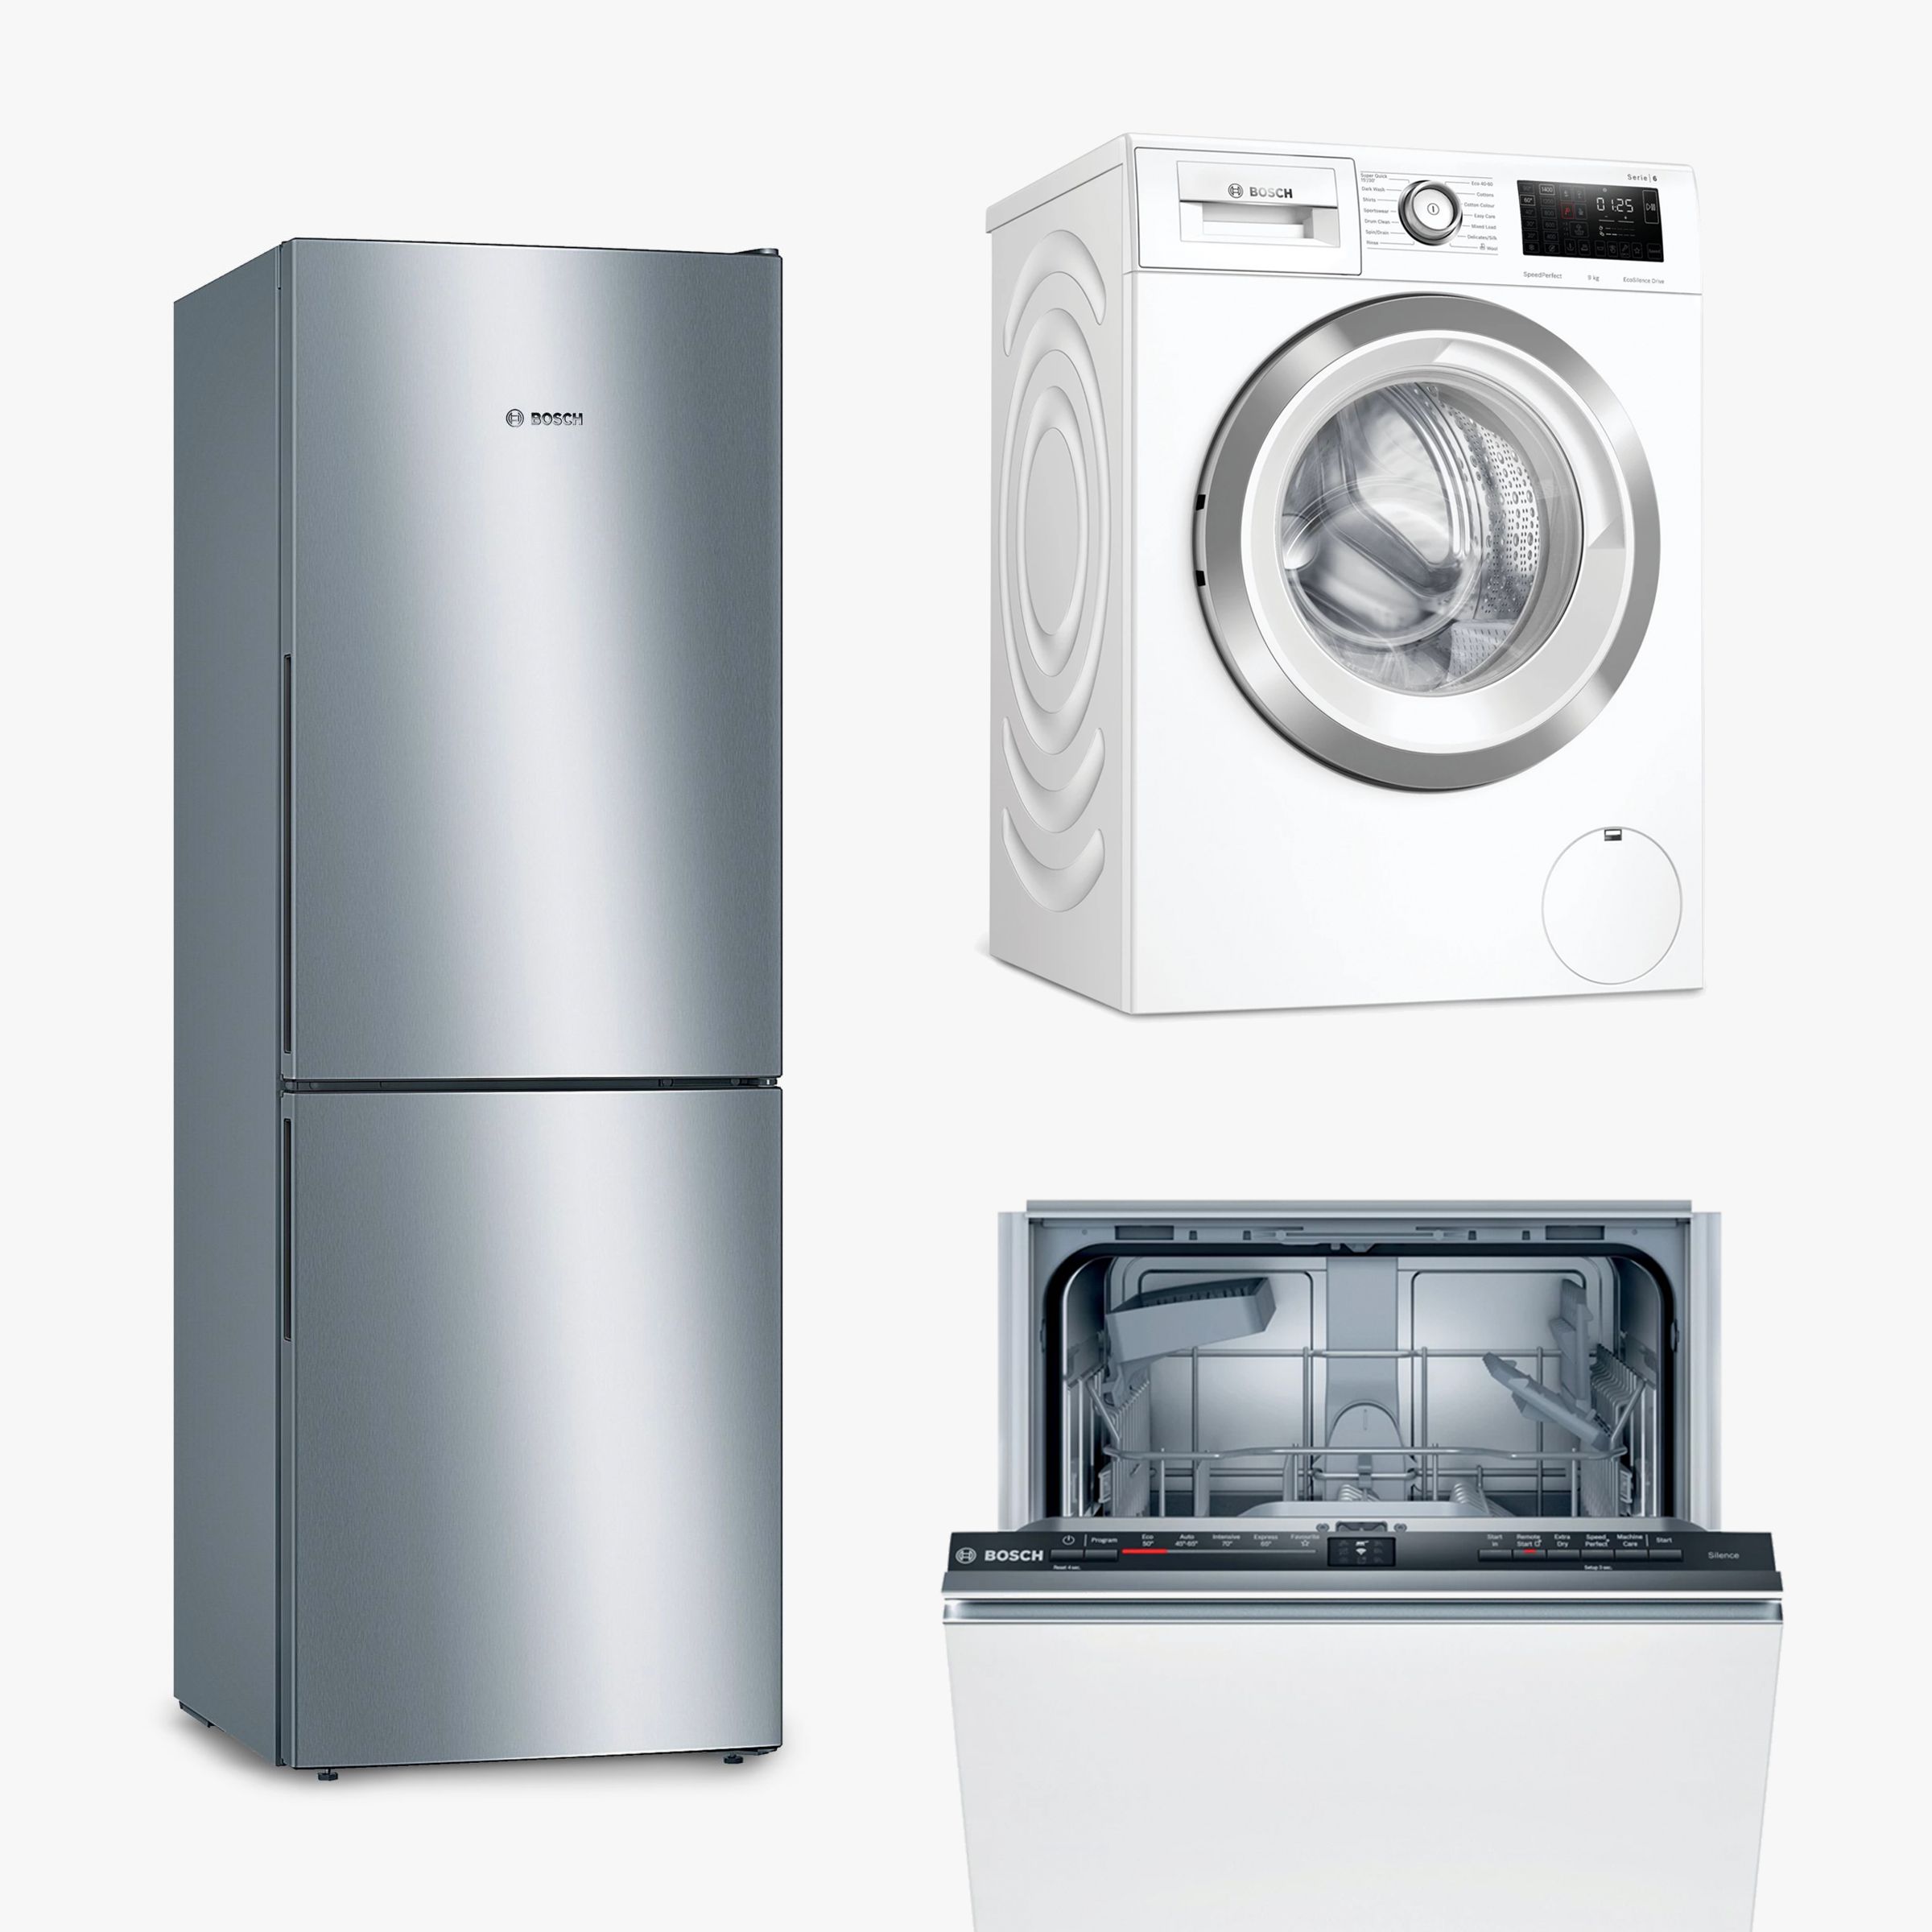 Bosch Shop Home Appliances